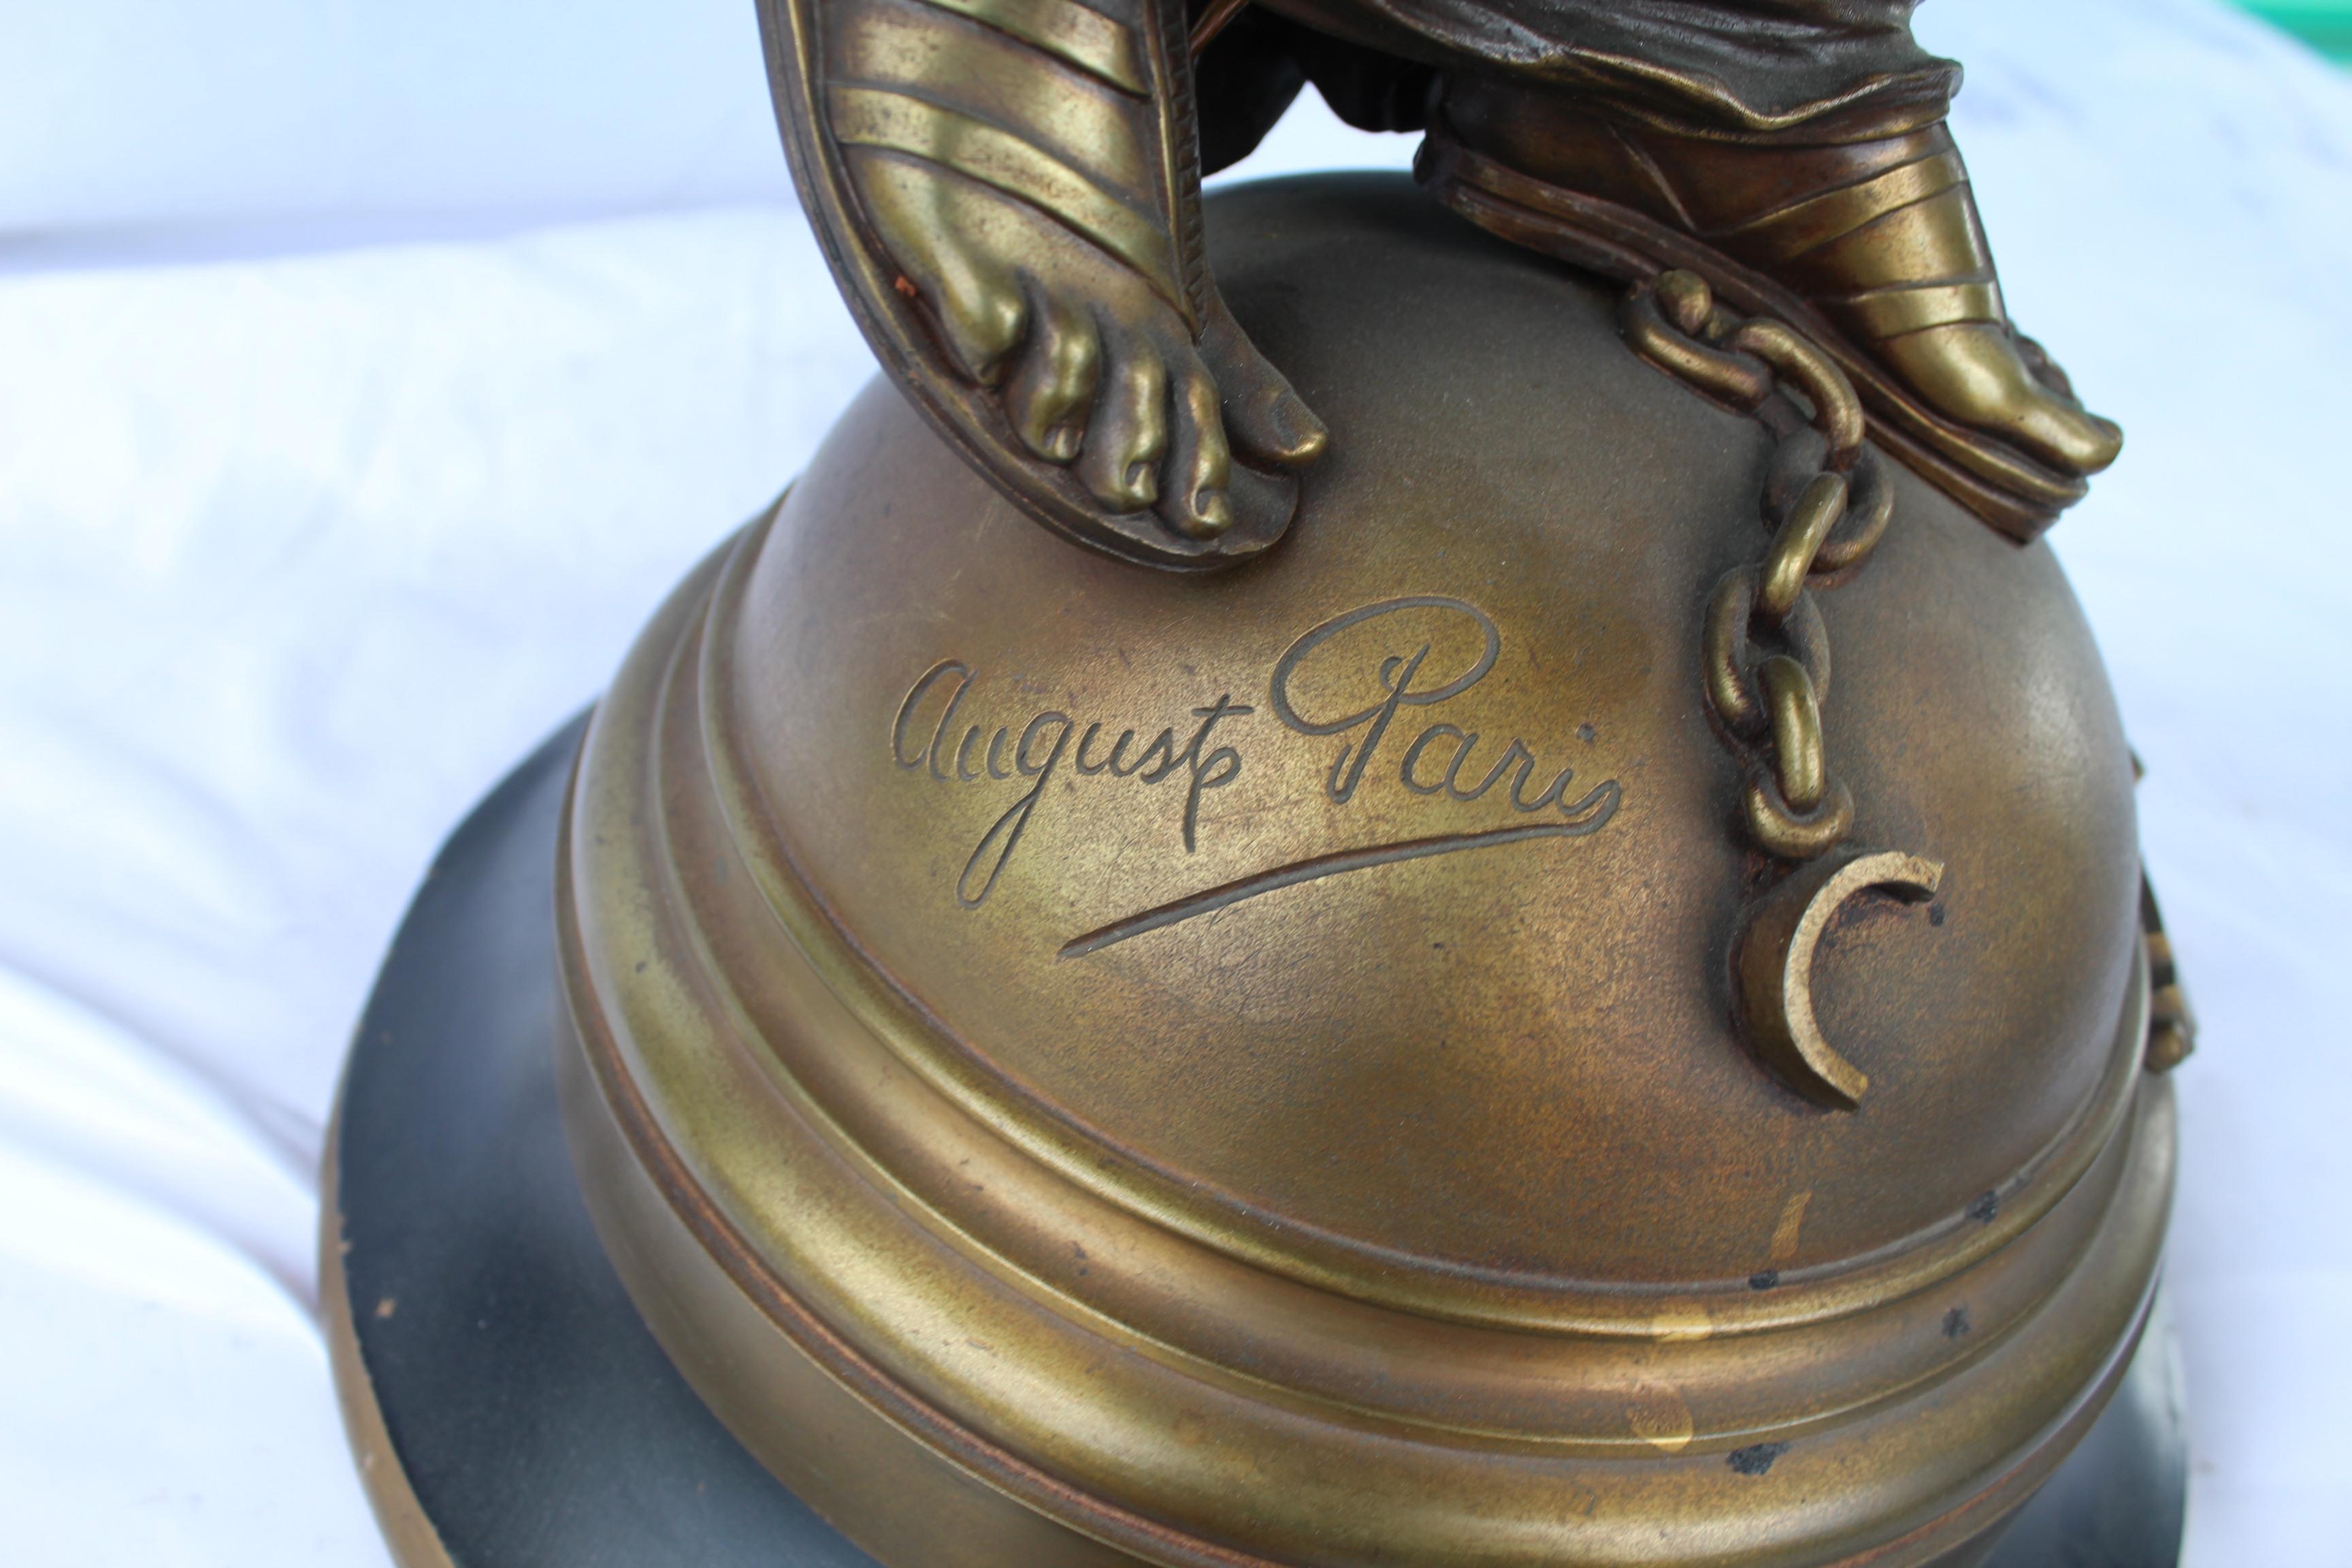 Un bronze original nouveau signé et répertorié avec Hors-Concours sur la base. L'artiste avait remporté les honneurs au salon de Paris pour celui-ci. Par l'artiste (Augusta Paris) sur la base. Belle patine, il manque la lumière de sa main. Ainsi que